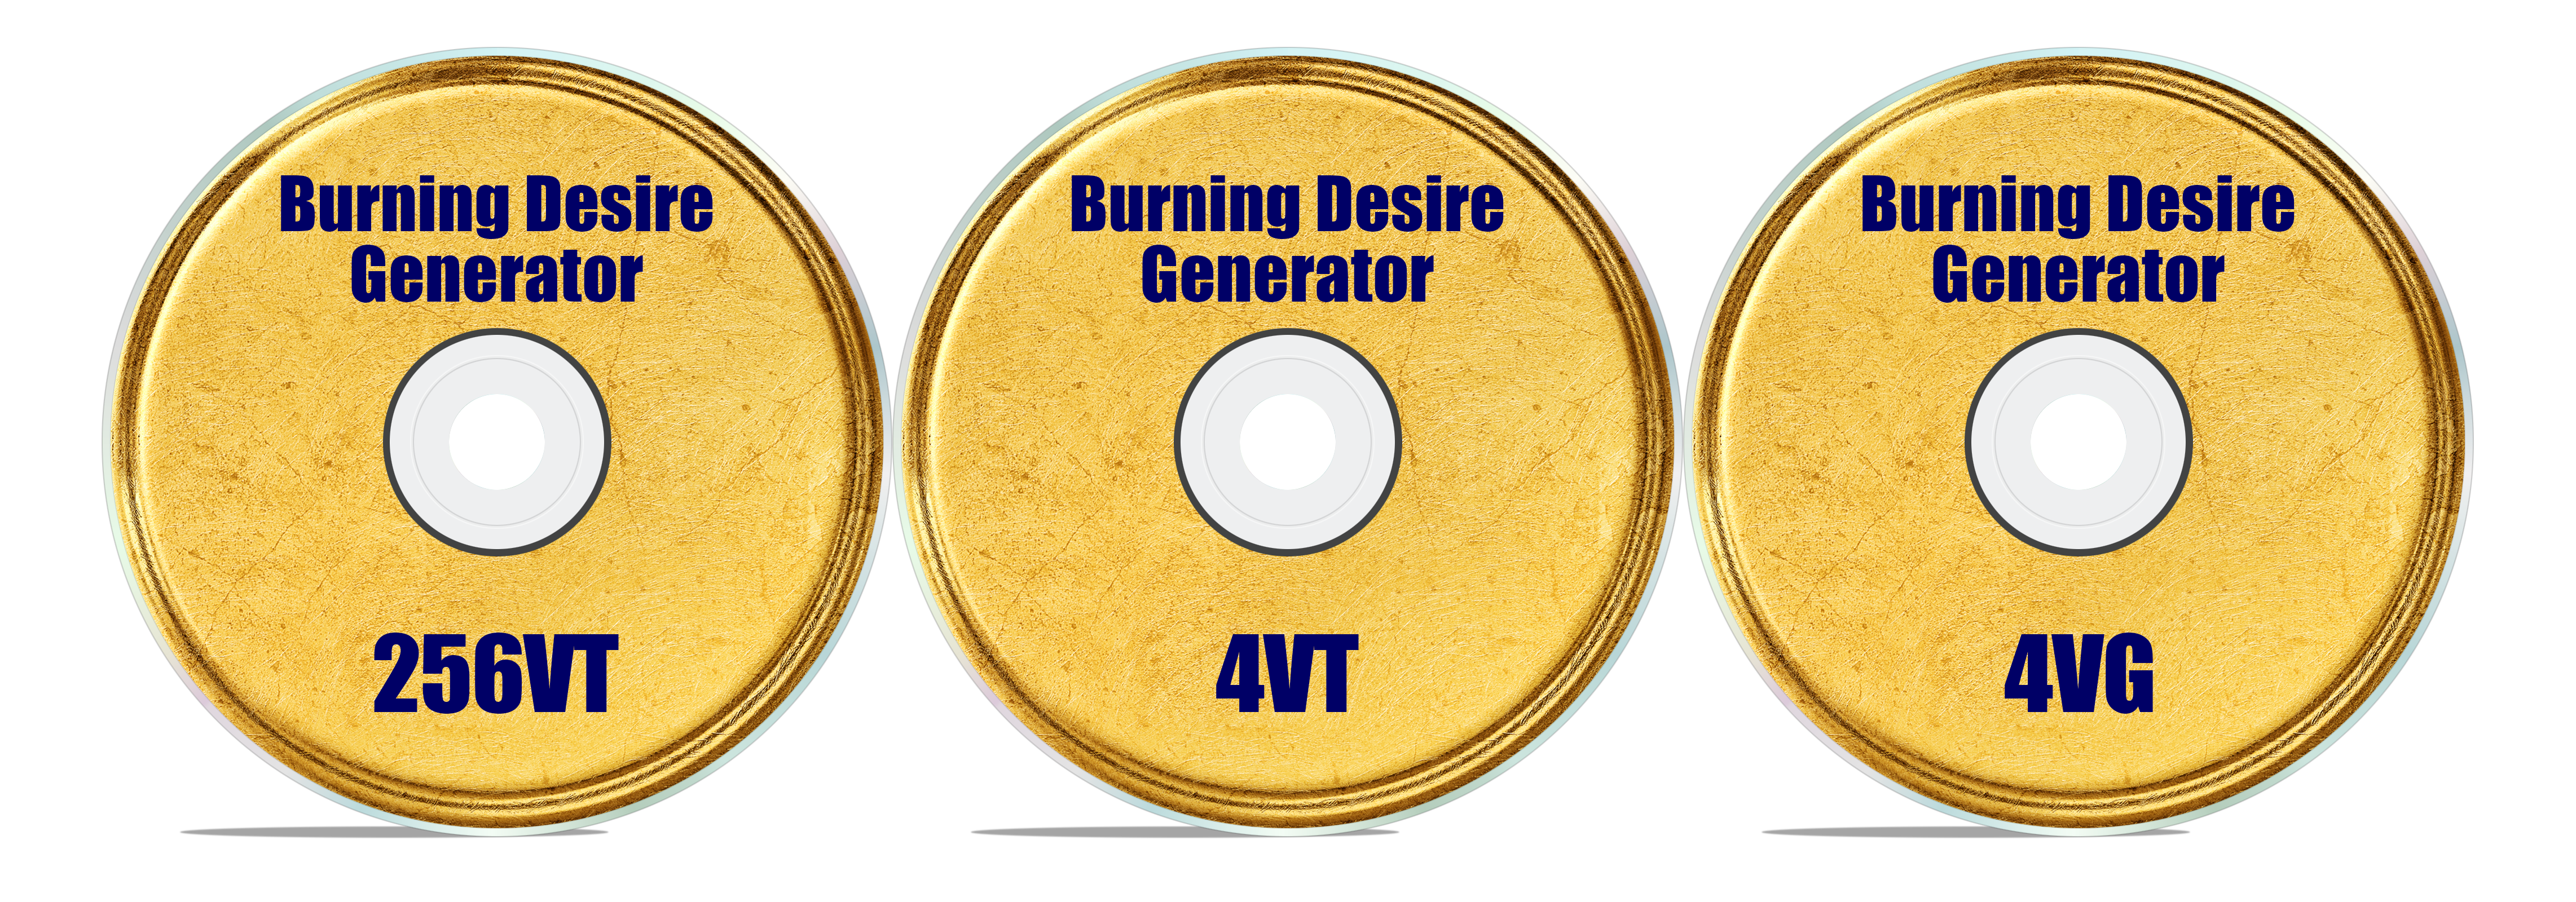 Burning Desire Generator